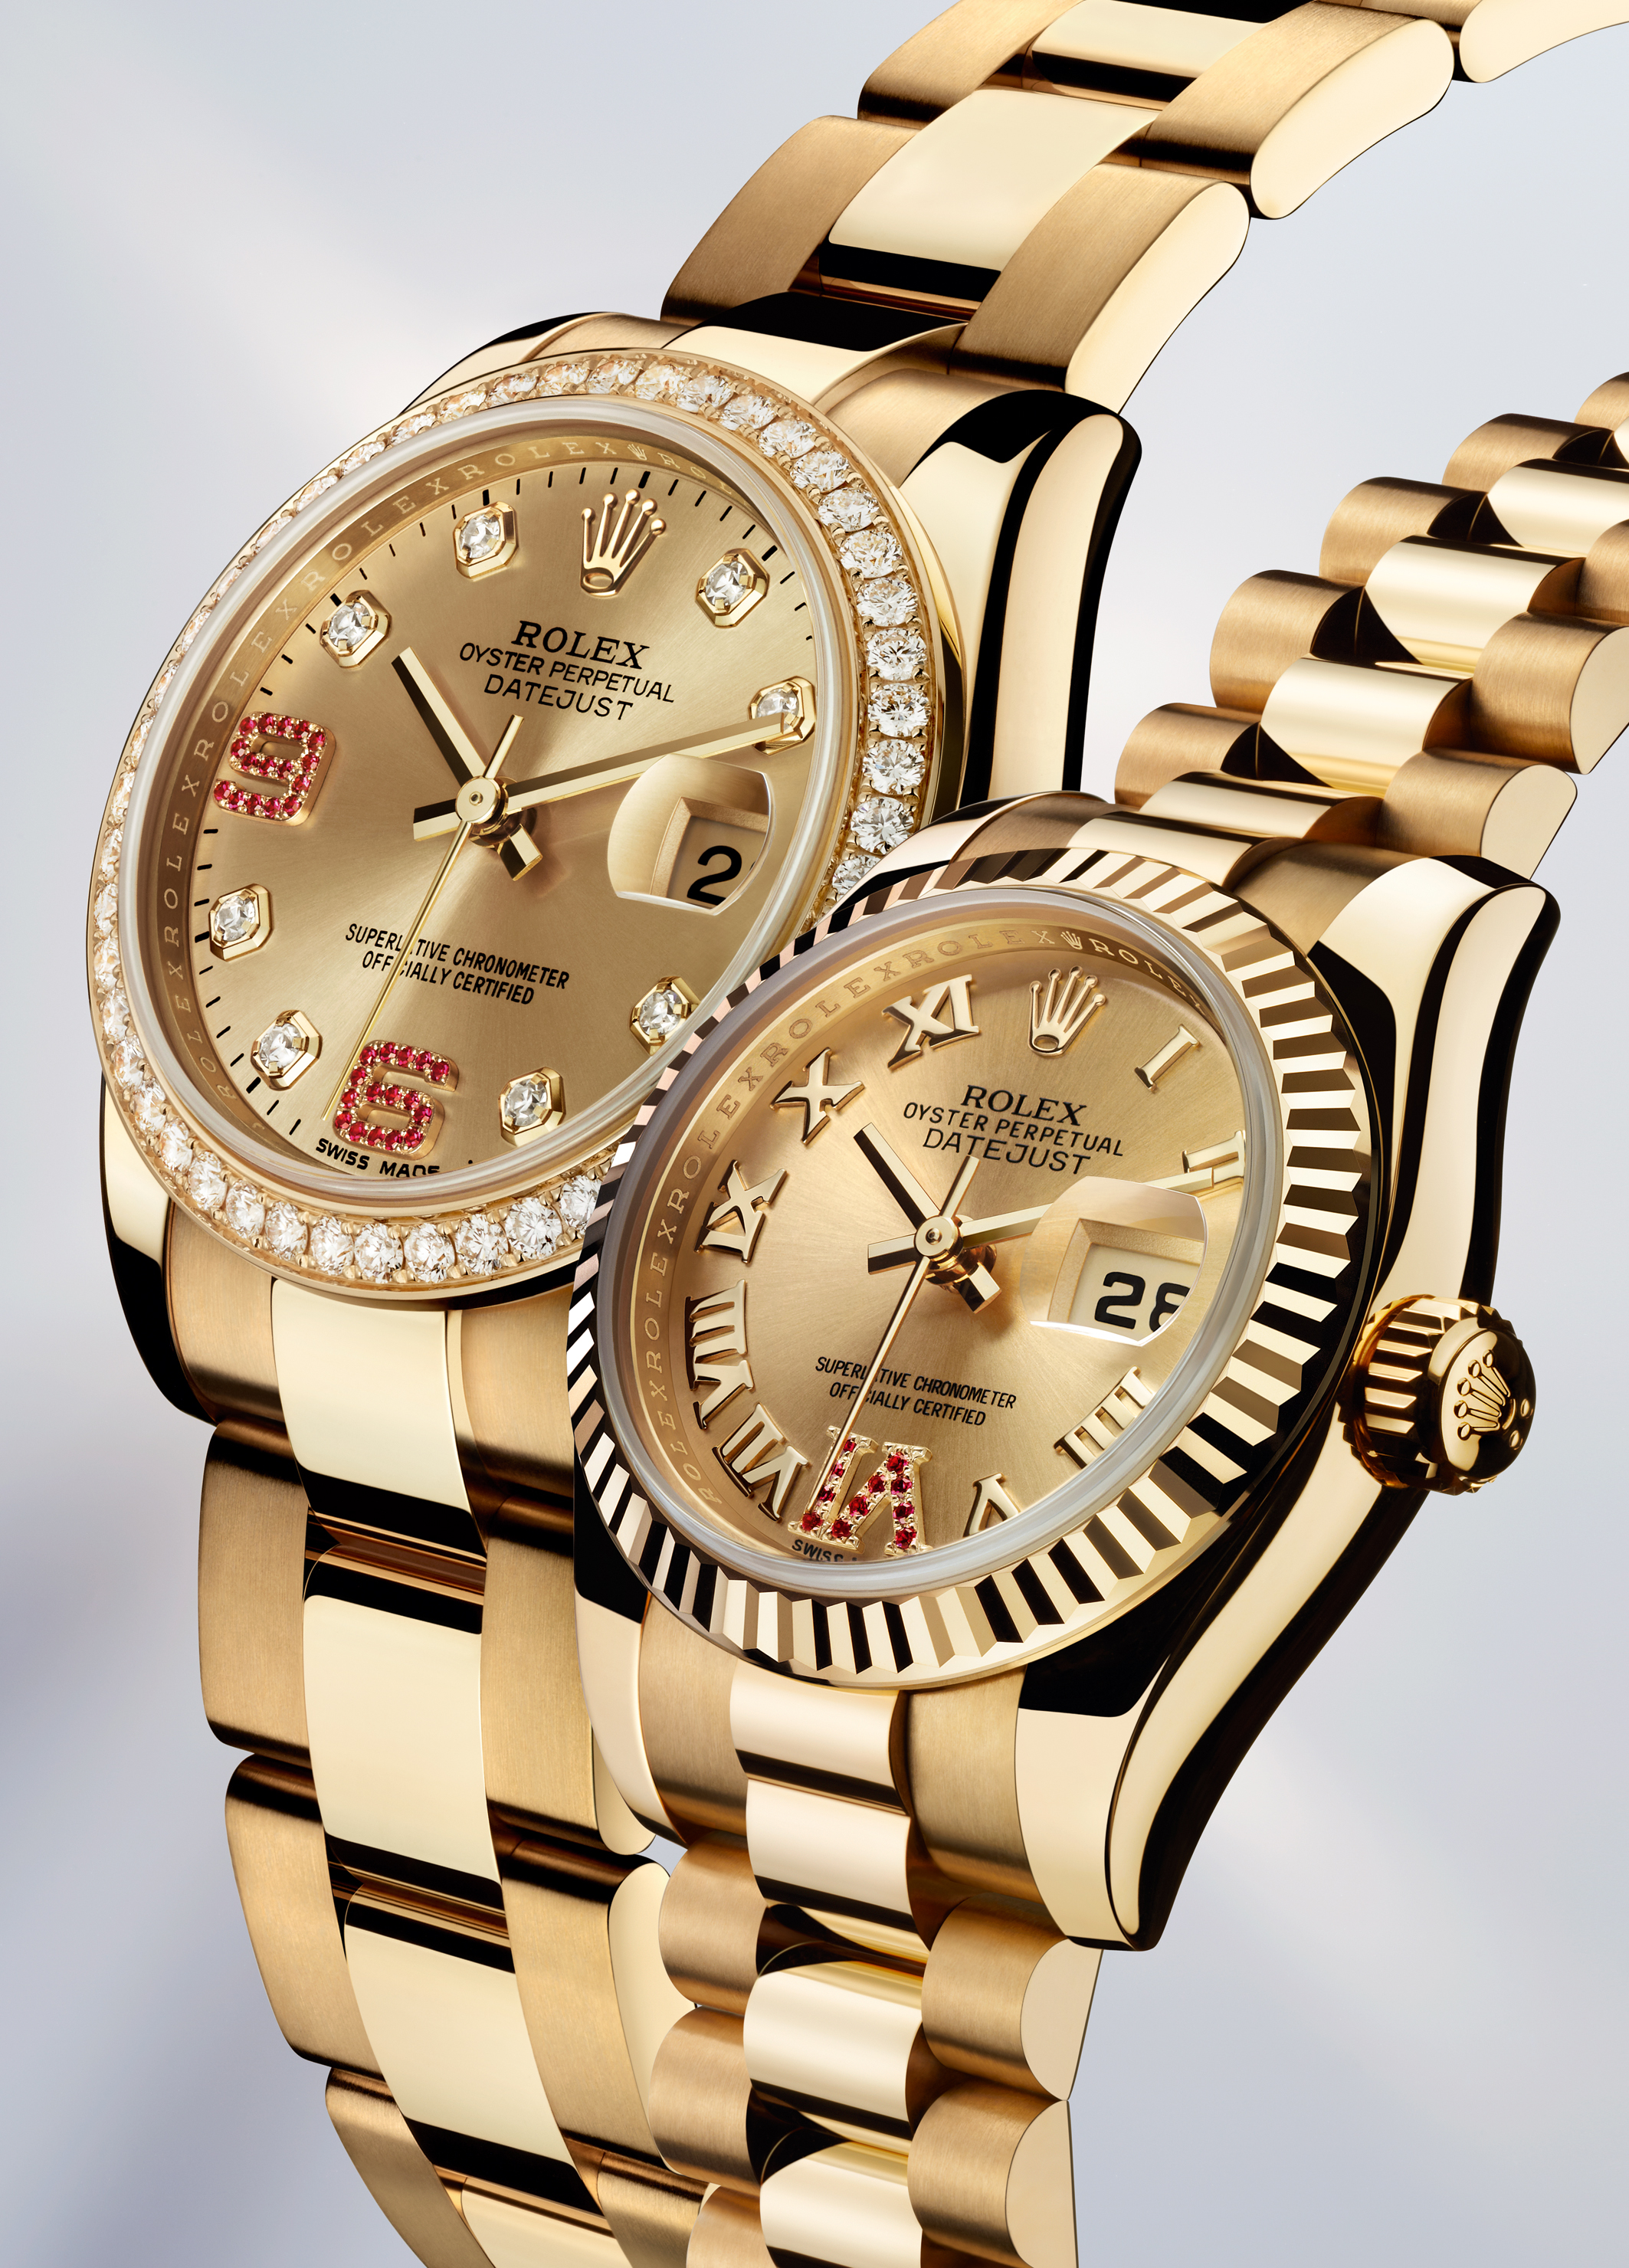 Название часов наручных. Часы ролекс. Часы ролекс оригинал. Швейцарские часы ролекс. Rolex часы Original.